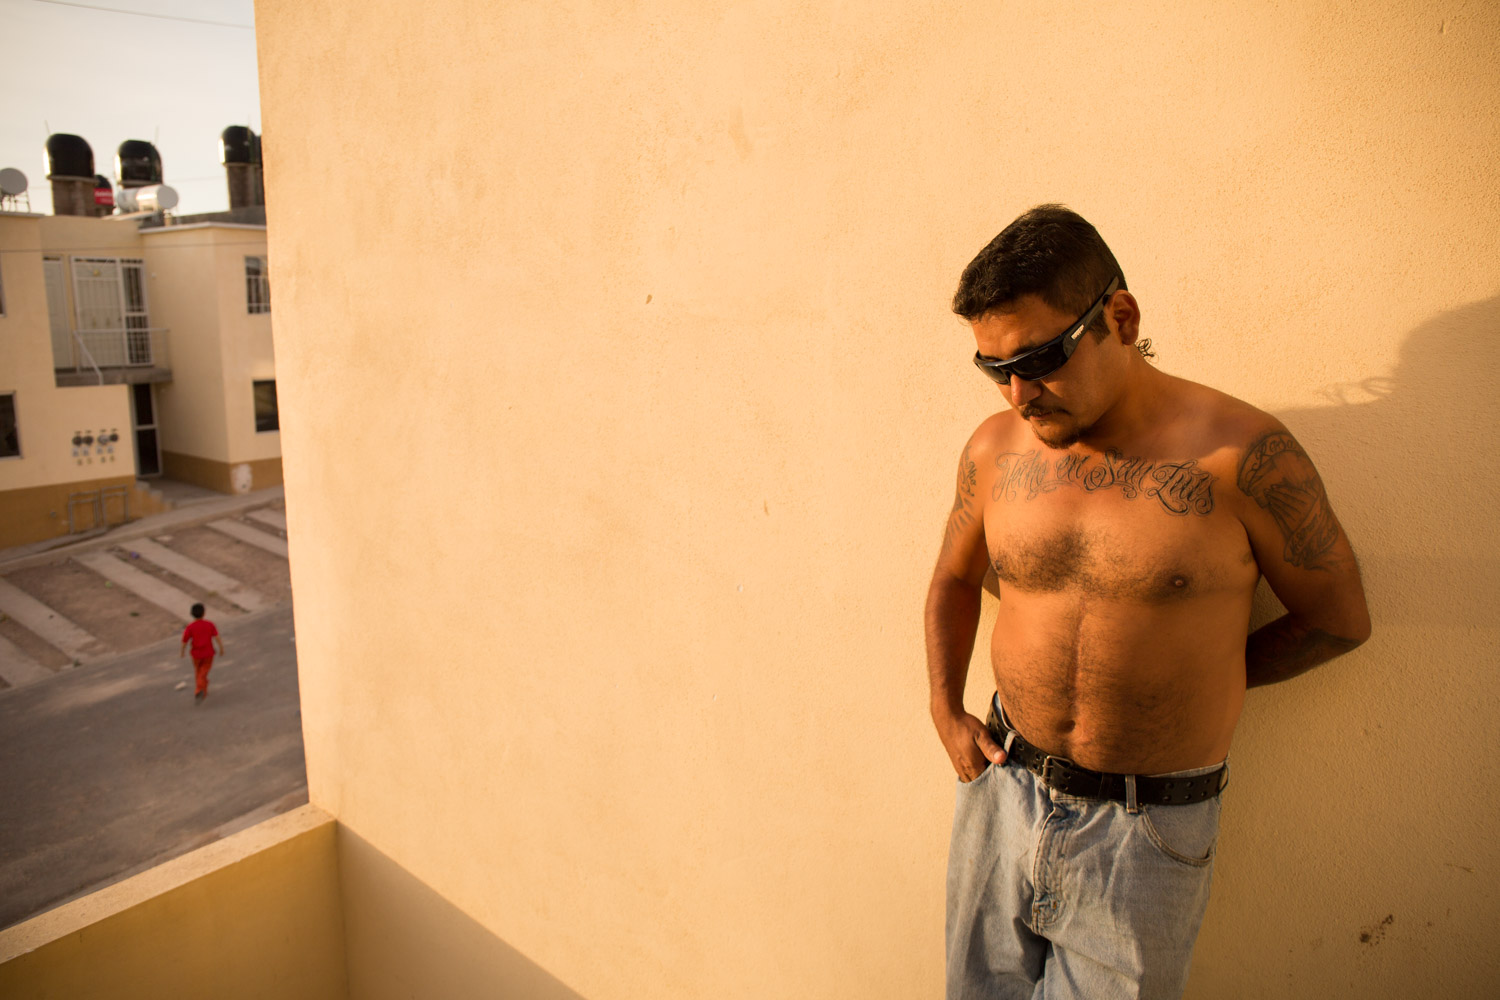 El Mijis, in a neighborhood of Aguascalientes, during the bike tour "A Shout of Existence". His tattoo on his chest "Hecho en San Luis" was done some days before in Saltillo. He now has a big tattoo of a phoenix on his chest.
Aguascalientes, AGS, Mexico - 23/02/2015.

El Mijis, dans un quartier d'Aguascalientes, lors du périple à vélo "Un Cri d'Existence". Son tatouage sur le torse "Hecho en San Luis" a été fait quelques jours plus tôt à Saltillo. Il a maintenant un grand phœnix de tatoué sur son torse.
Aguascalientes, AGS, Mexique - 23/02/2015.